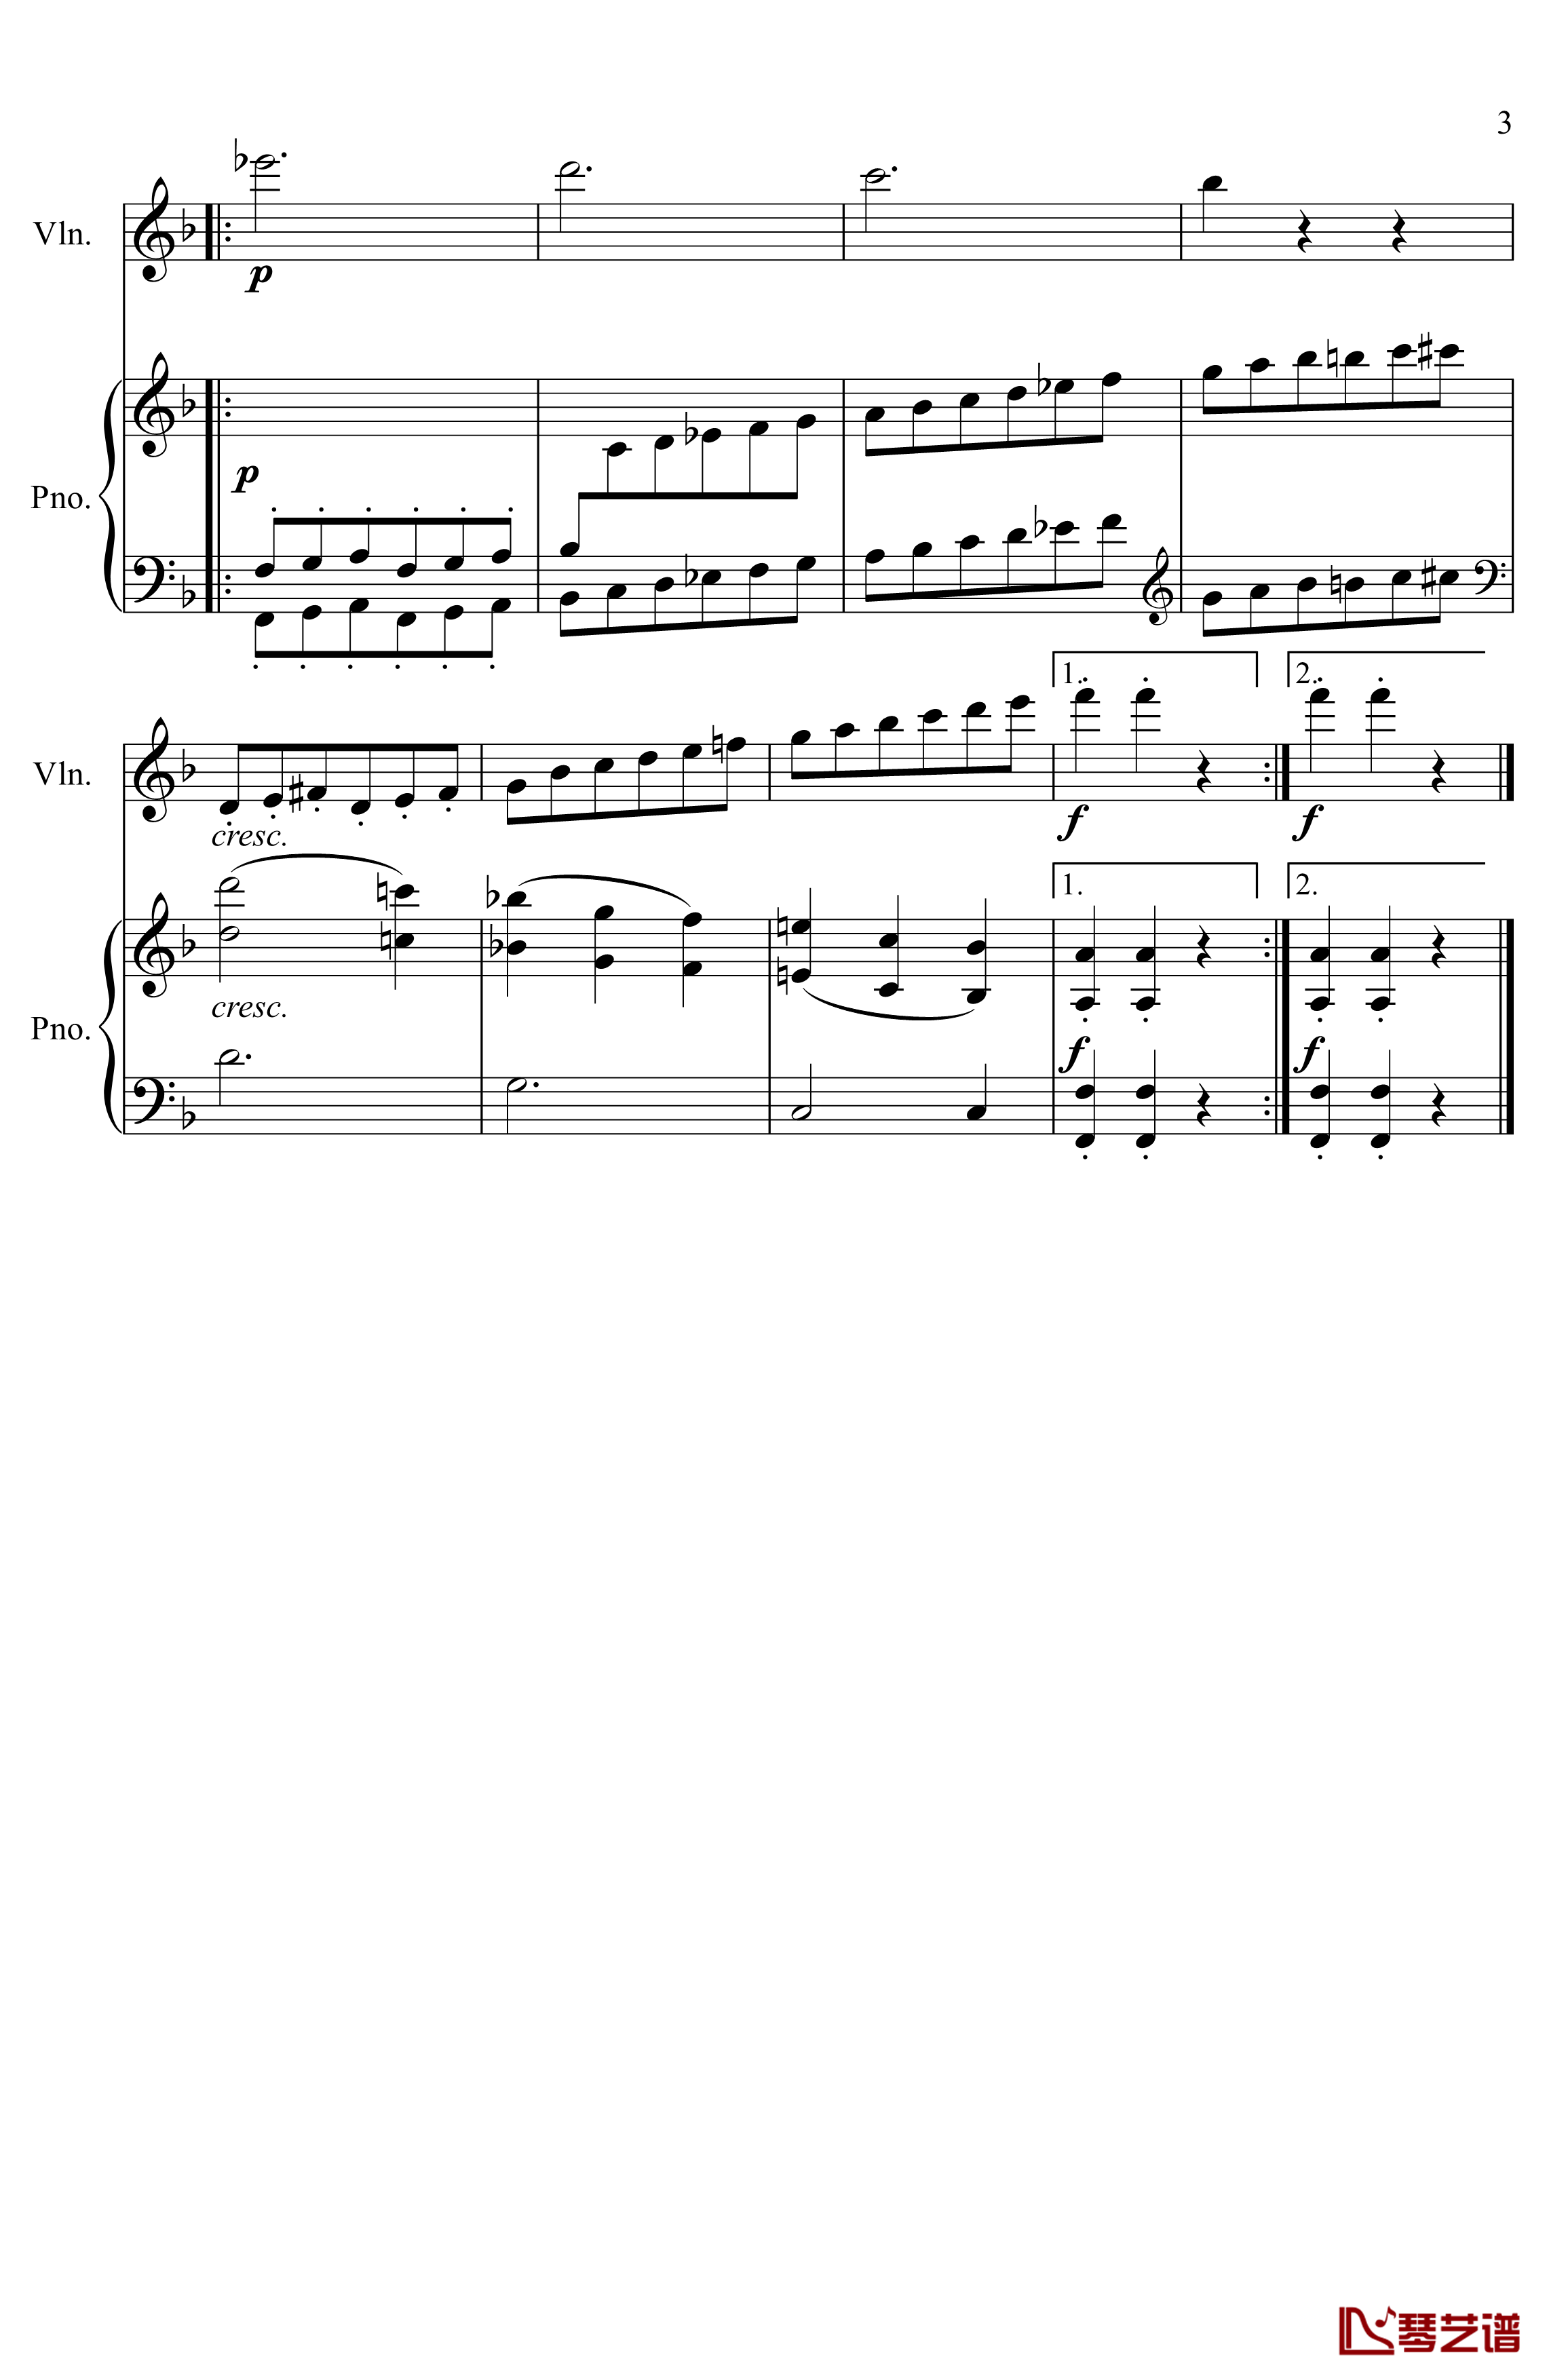 第5小提琴与钢琴奏鸣曲钢琴谱-第三乐章-贝多芬-beethoven